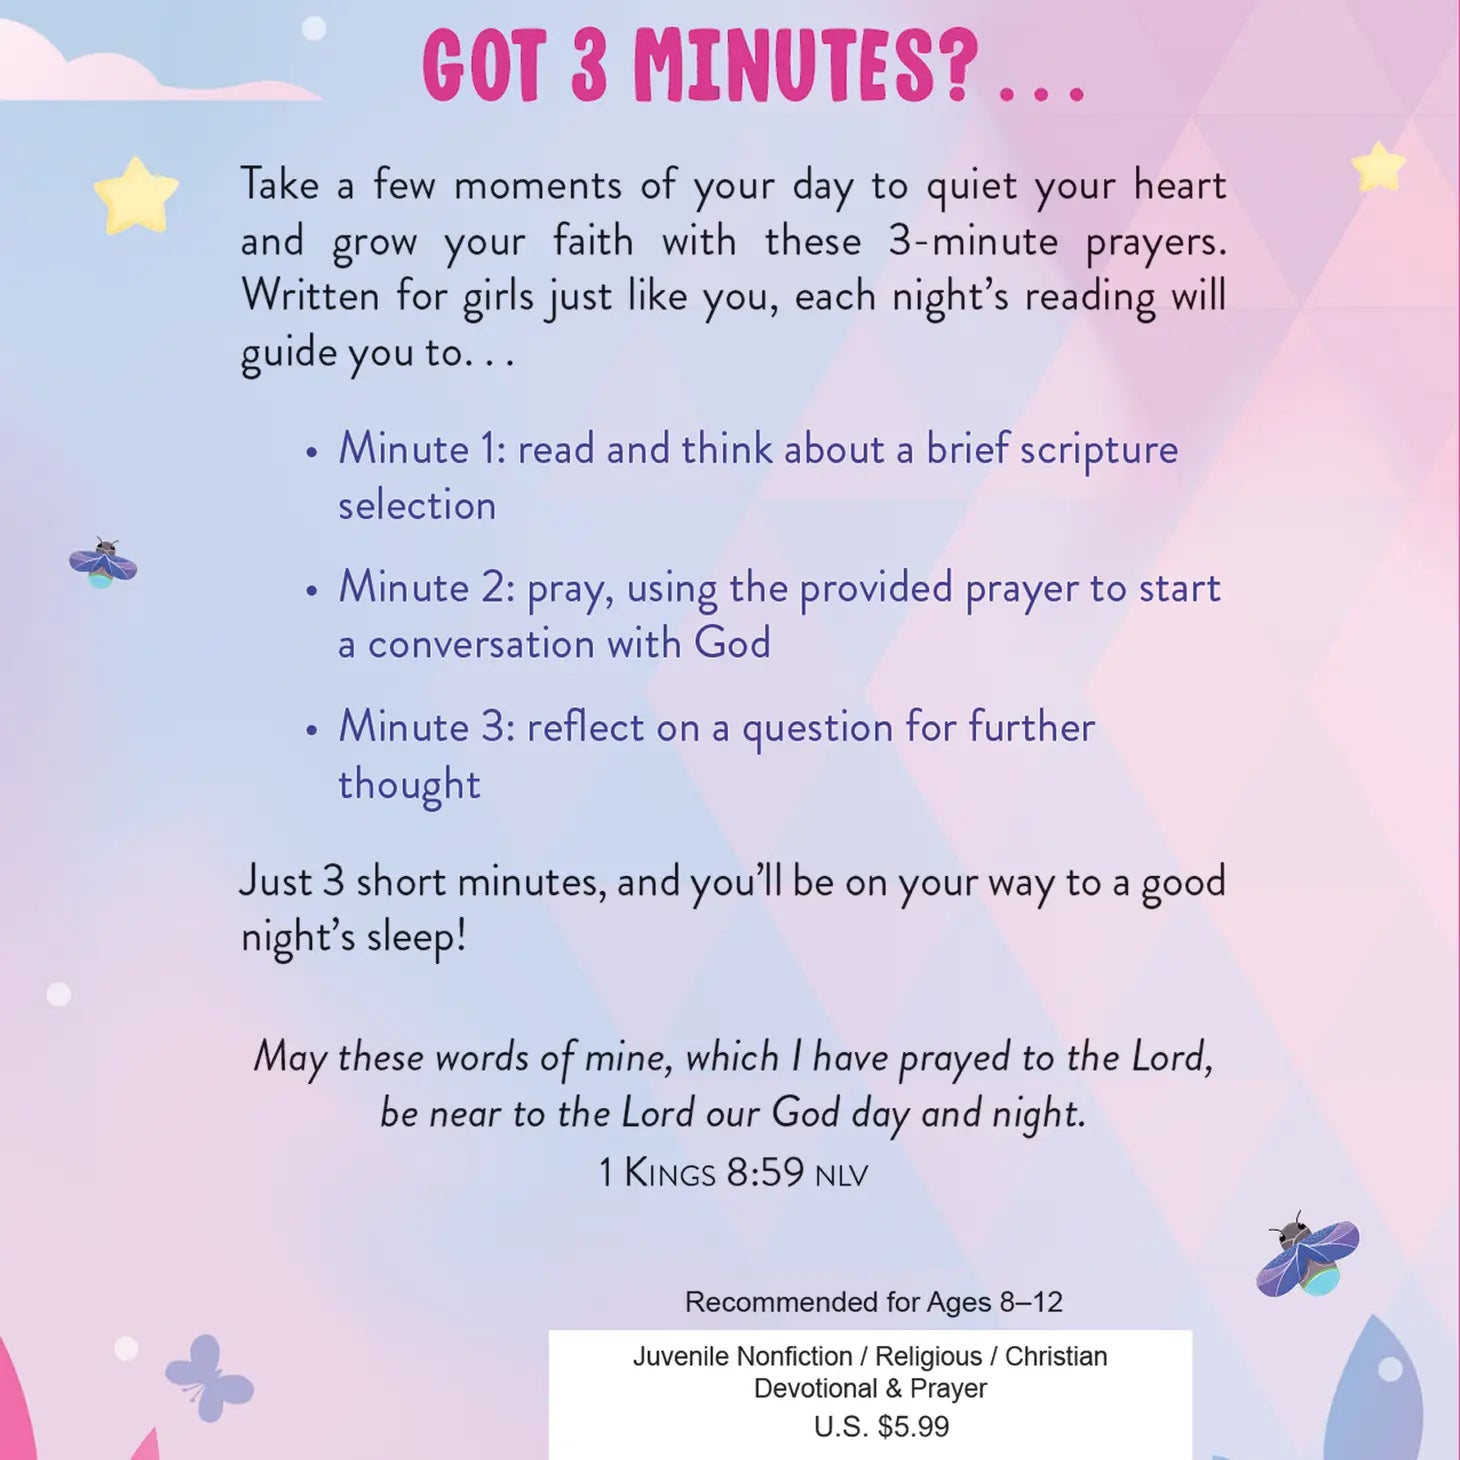 3-Minute Bedtime Prayers For Girls - Lulie